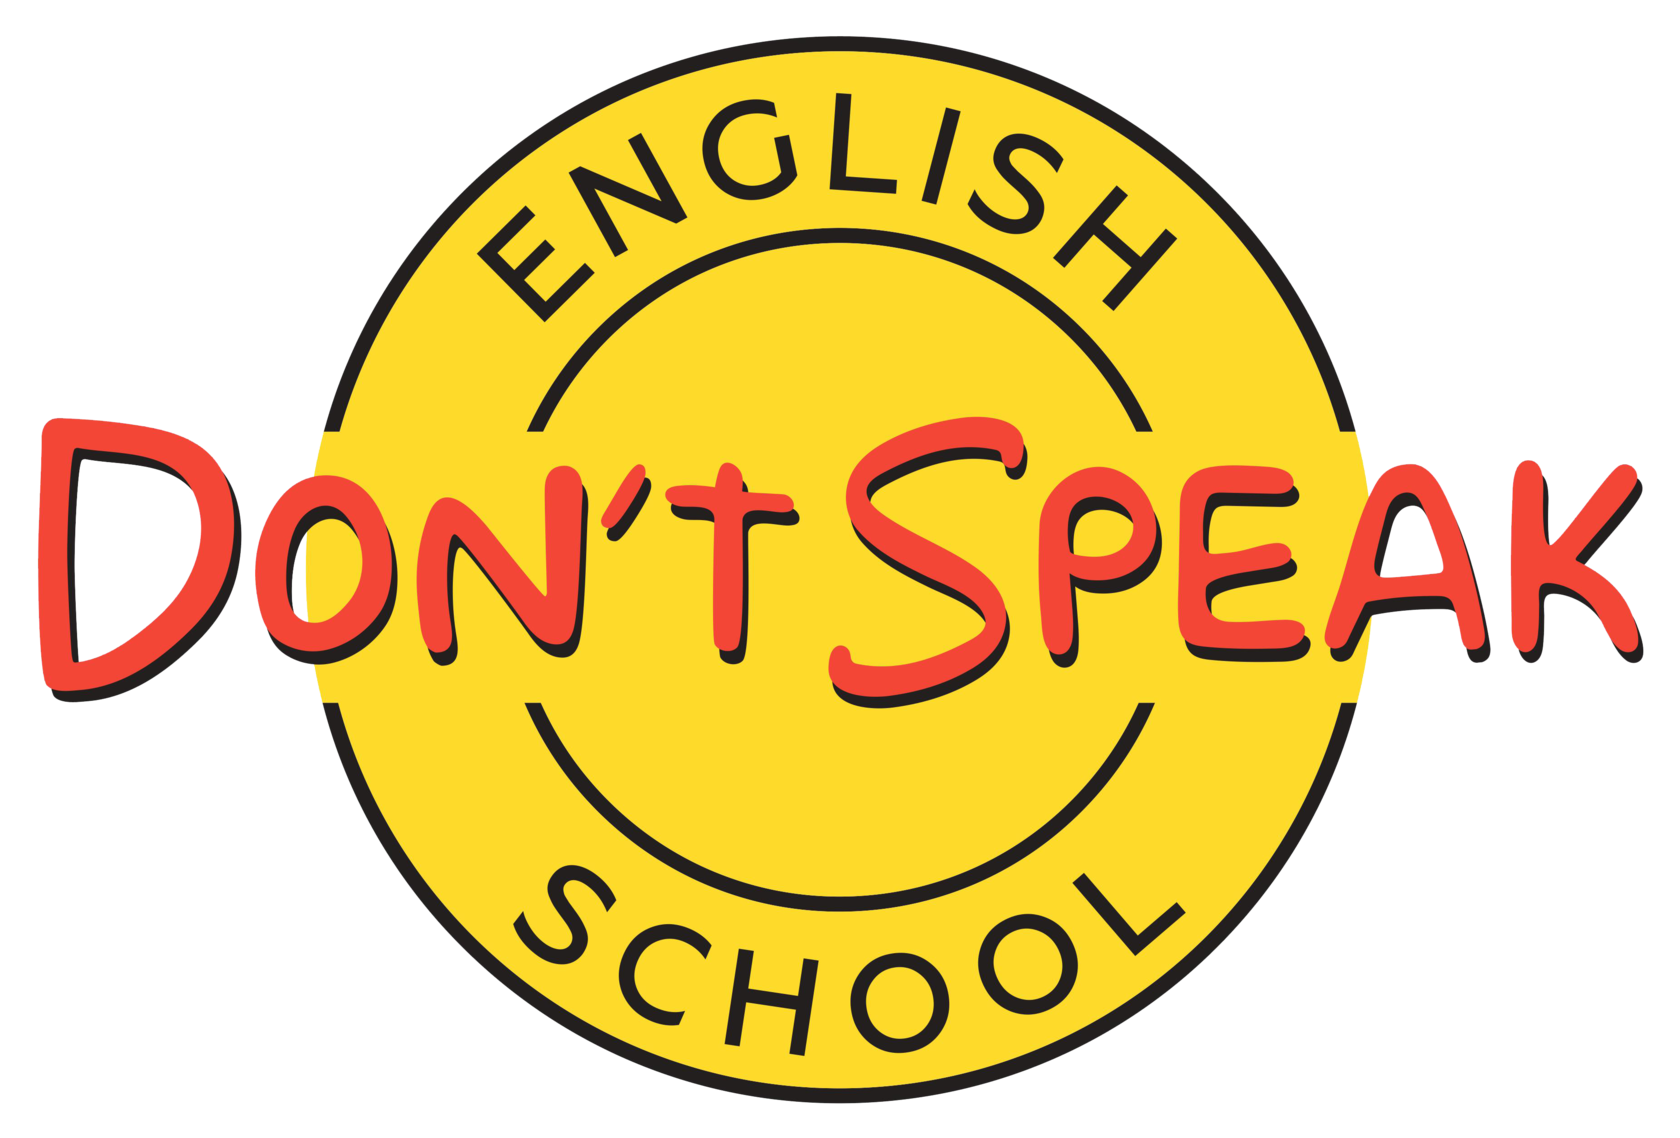 Don t speak где послушать. Школа донт спик. Don't speak школа английского языка. I don't speak English школа. Don’t speak подкаст.